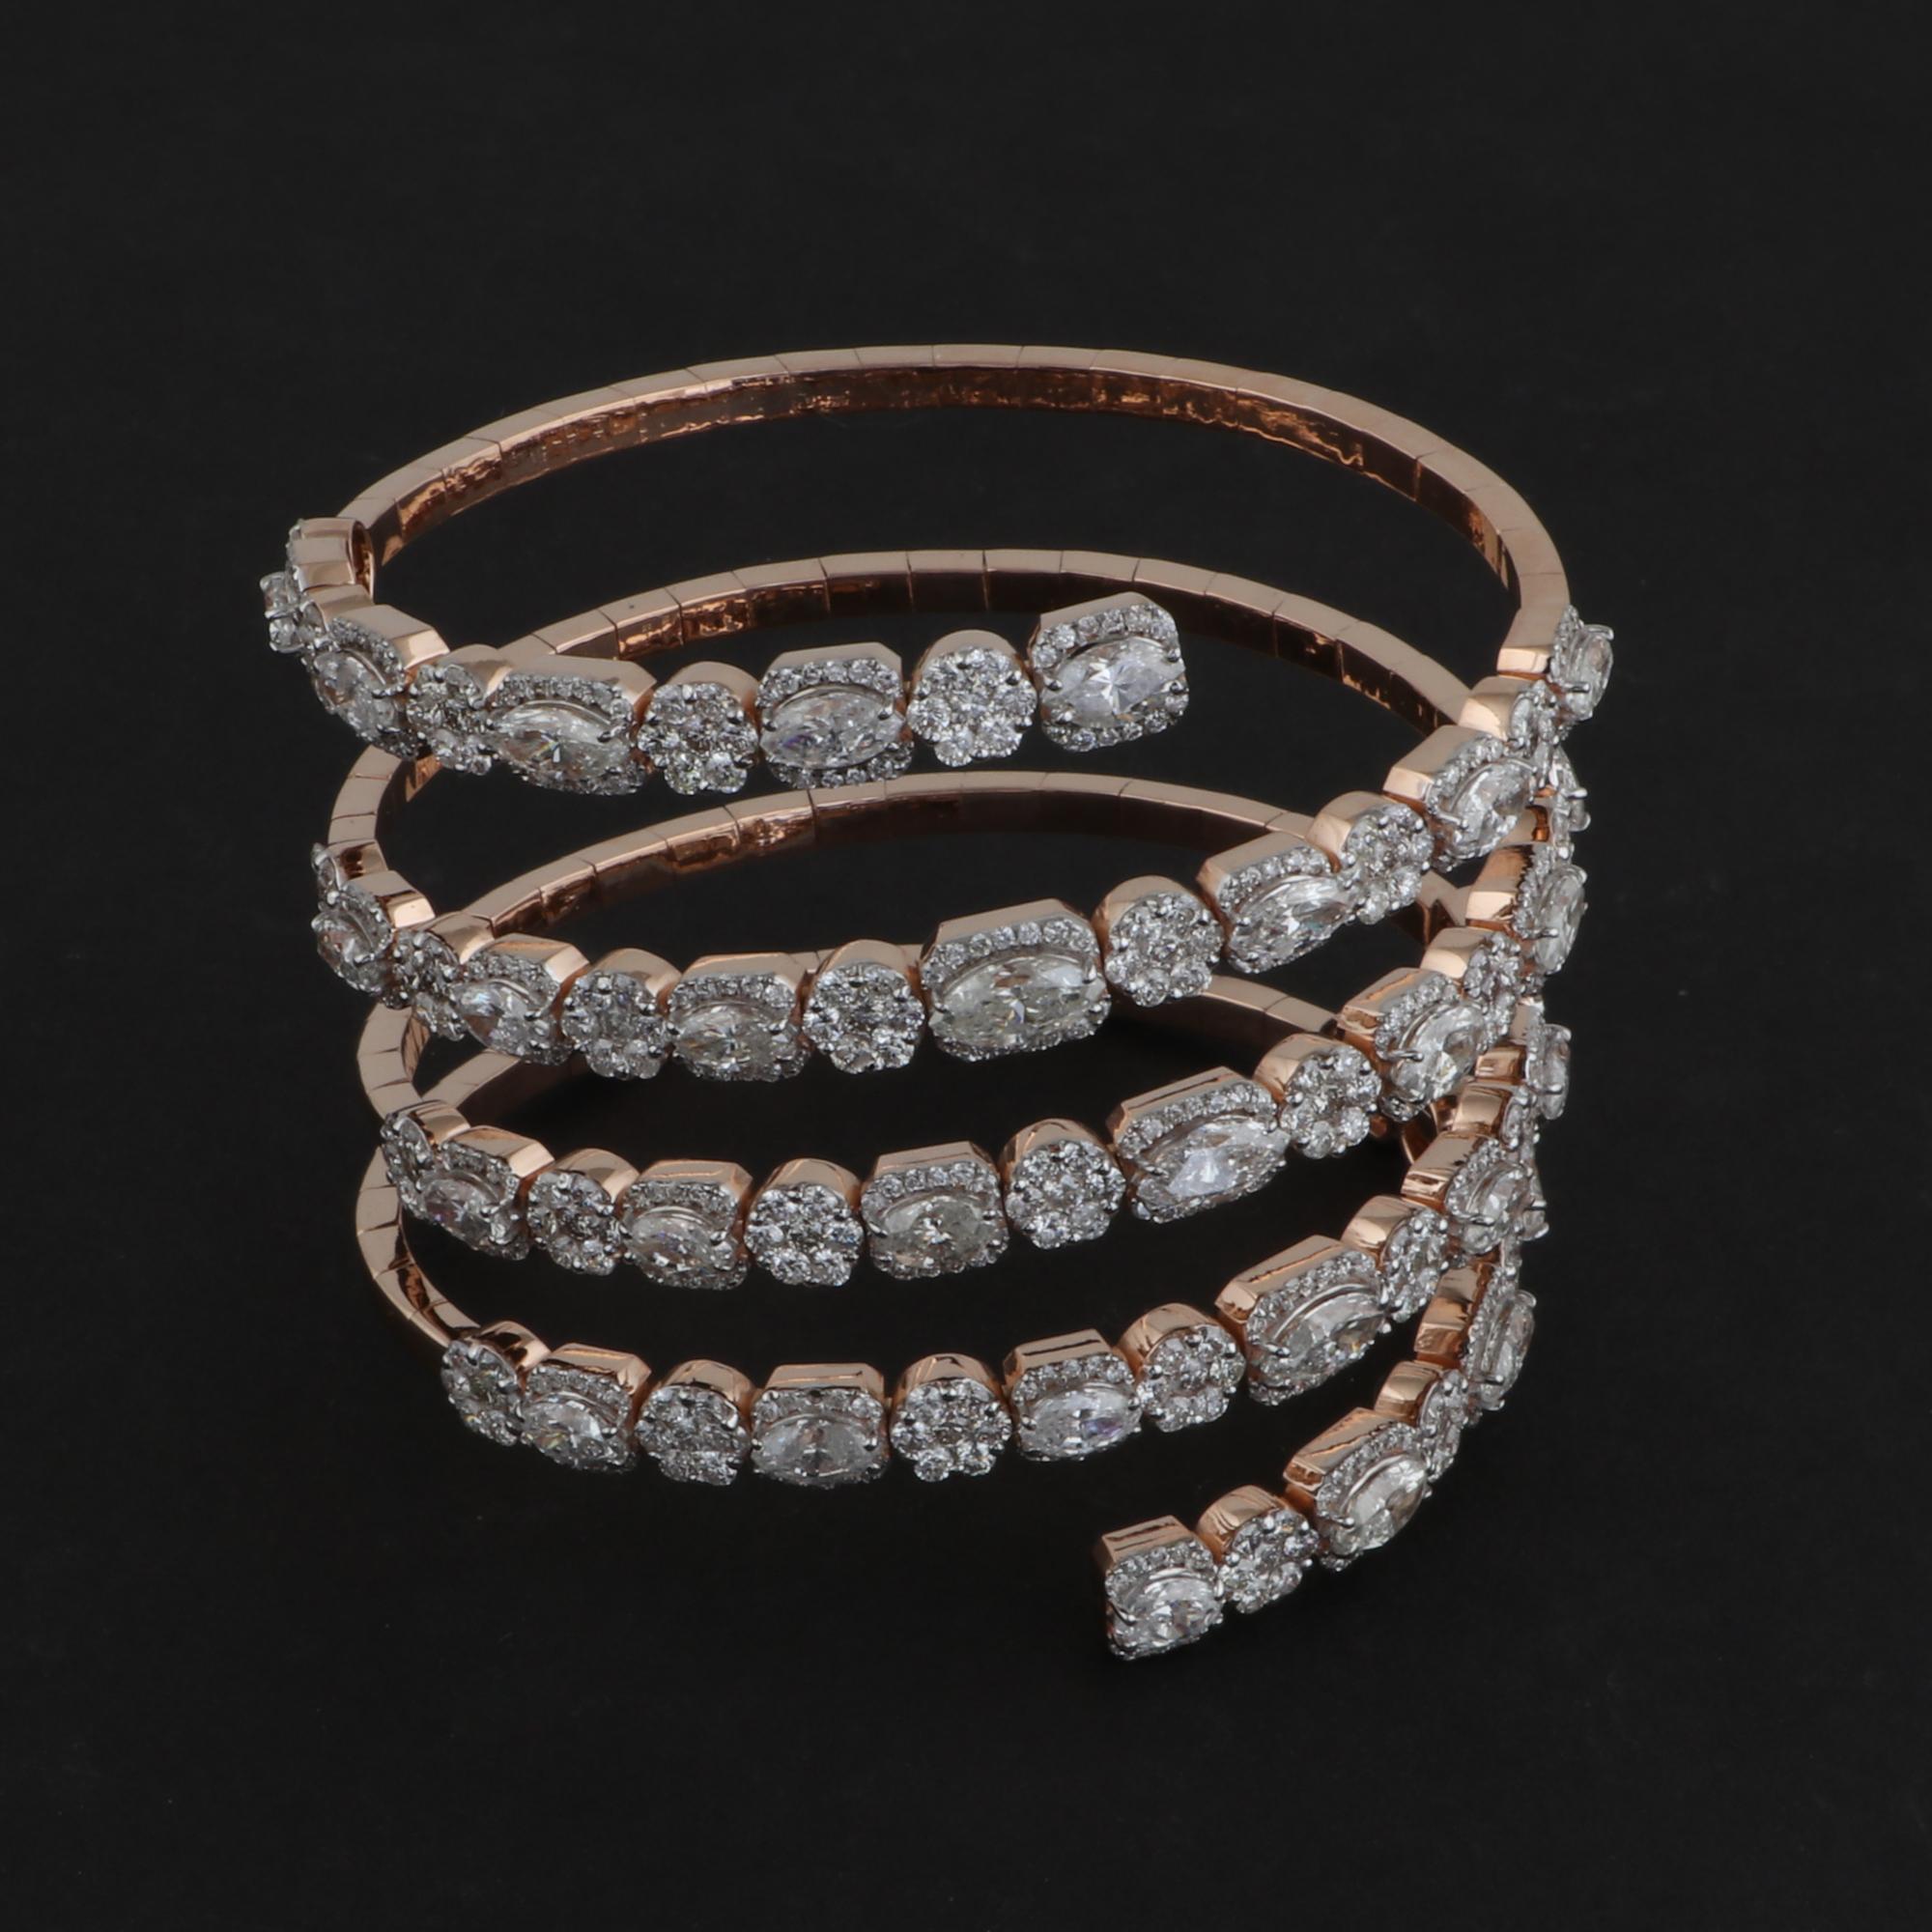 Modern Natural SI Clarity HI Color Diamond Spiral Bangle Bracelet 18 Karat Rose Gold For Sale